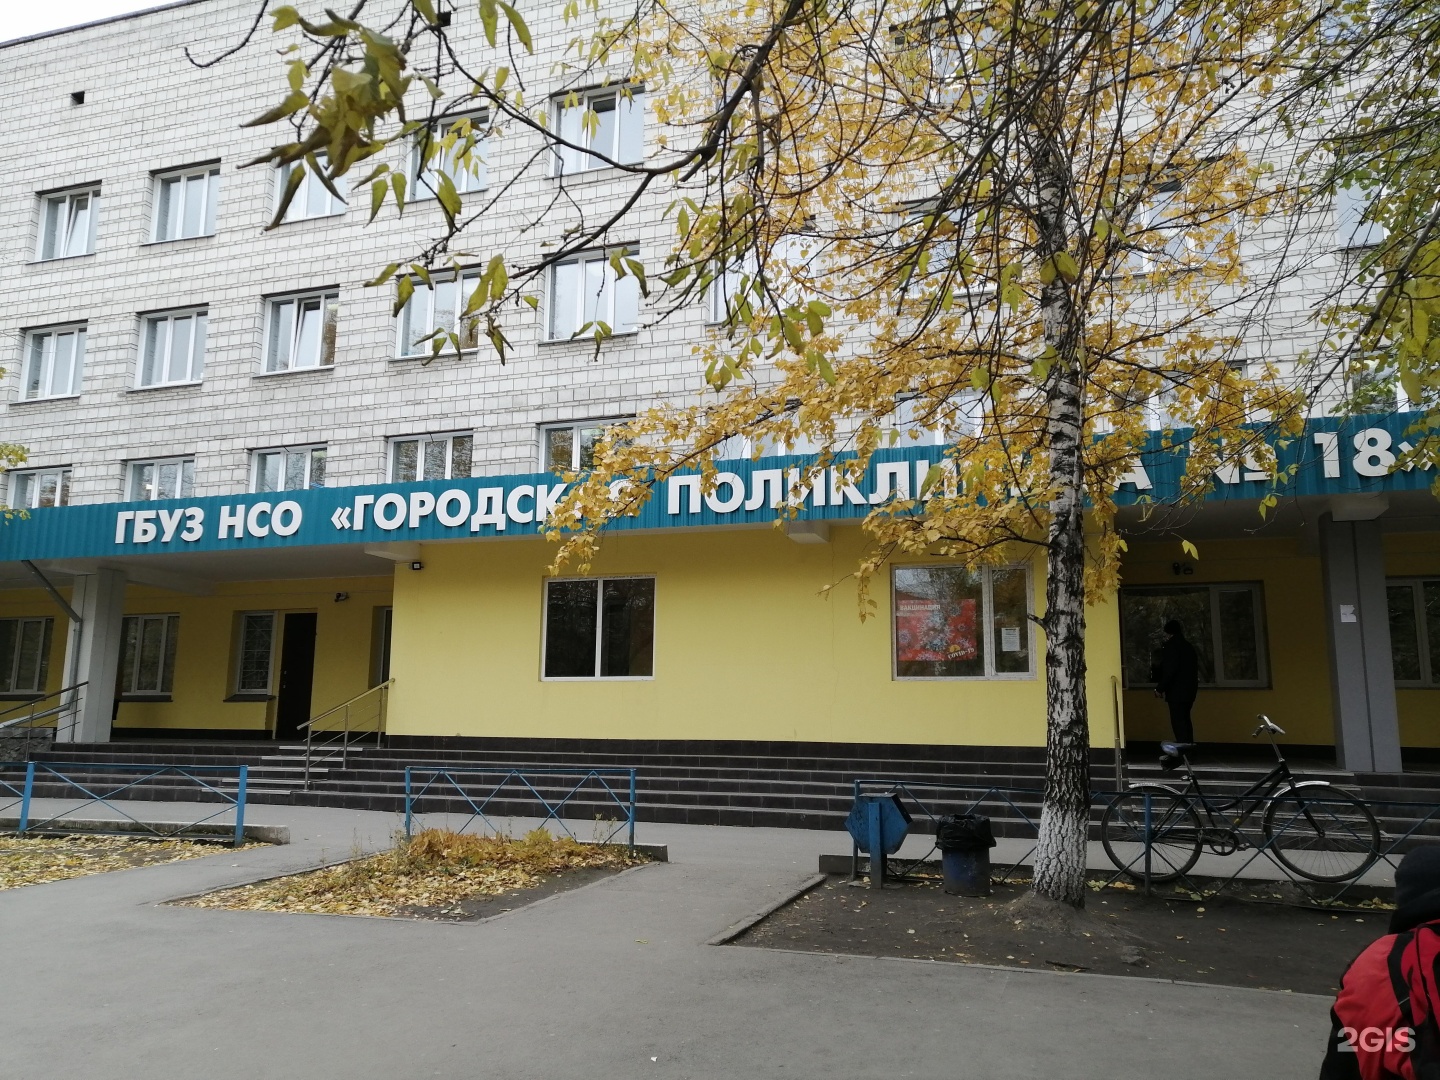 Широкая 113 поликлиника. 18 Поликлиника Новосибирск широкая 113. Ул широкая 113/2 Новосибирск. Широкая 15 Новосибирск.